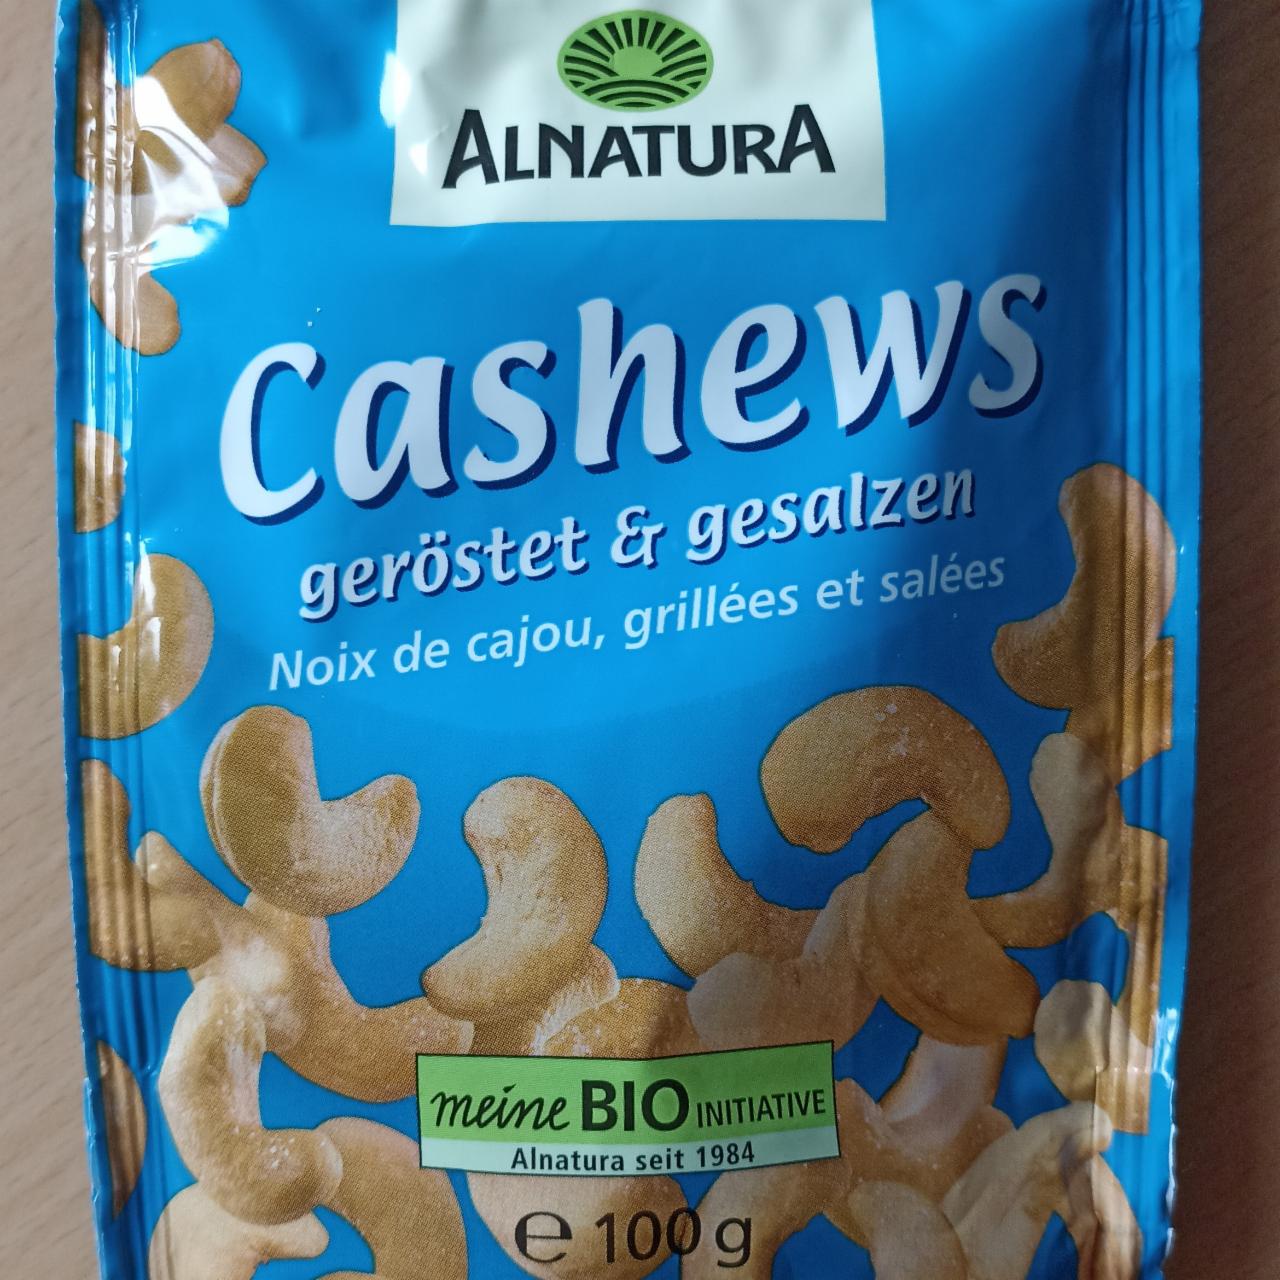 Képek - Cashews gerostet er gesalzen Alnatura